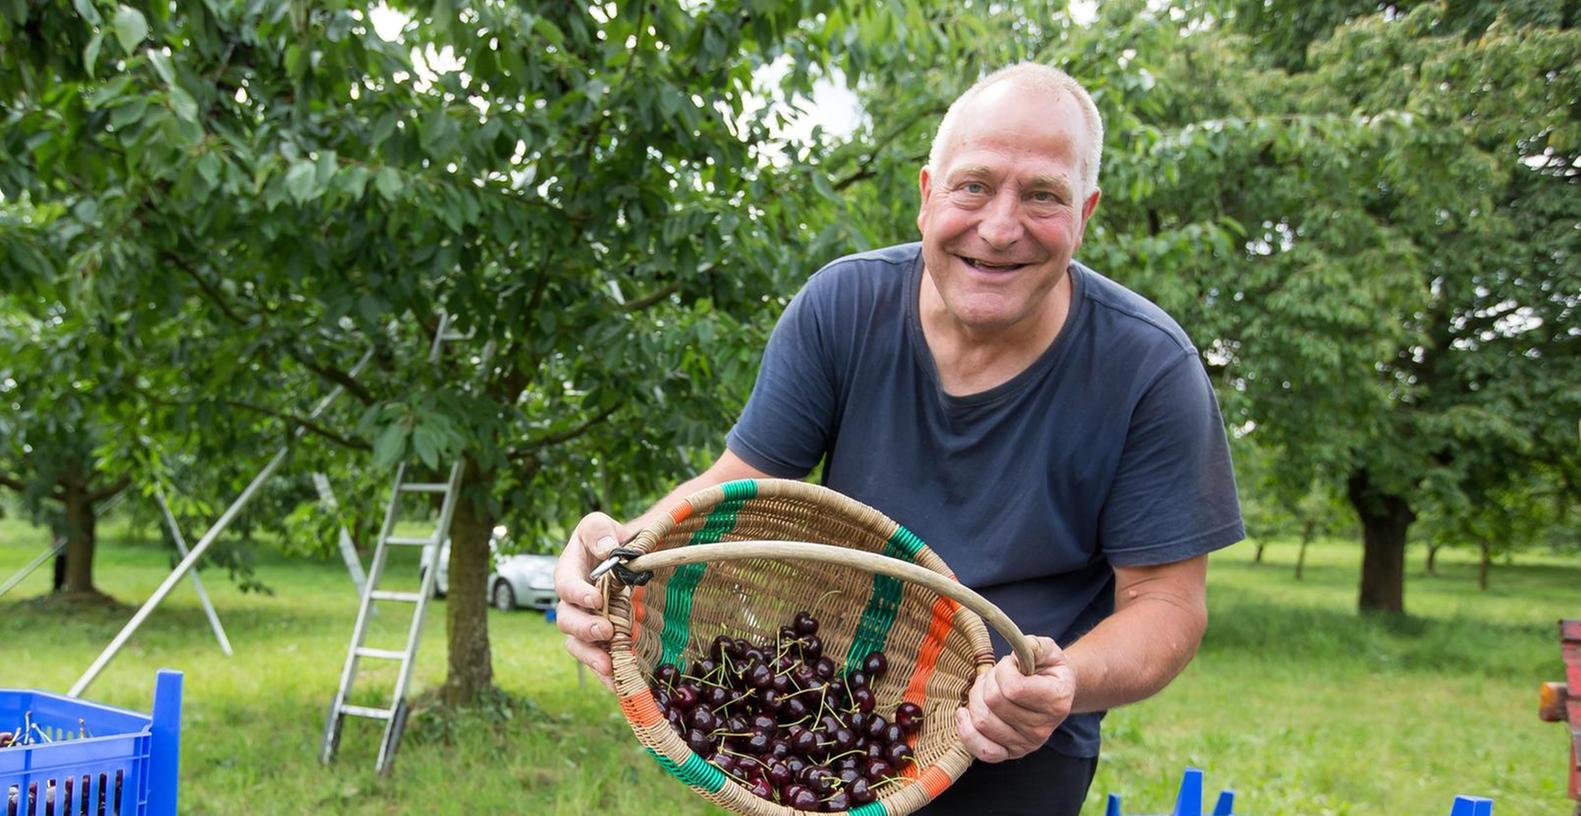 Helmut Prütting ist von der Kirschenernte in diesem Jahr ganz begeistert. Solche riesigen Früchte in diesen Mengen habe er noch nie gehabt, erzählt der 60-jährige Obstbauer aus Hagenbach.